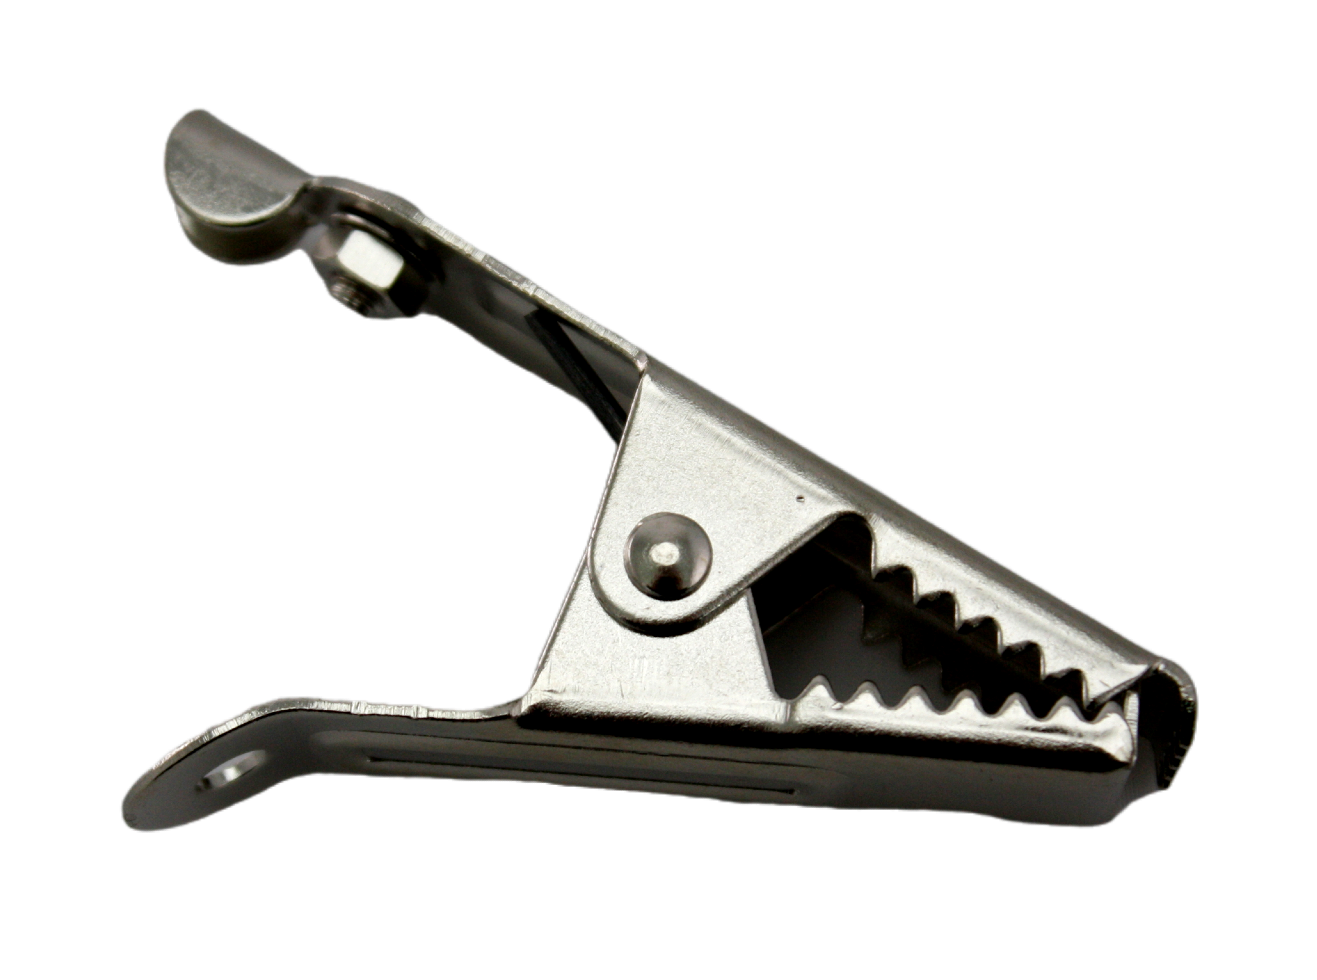 Single croc clip, side view